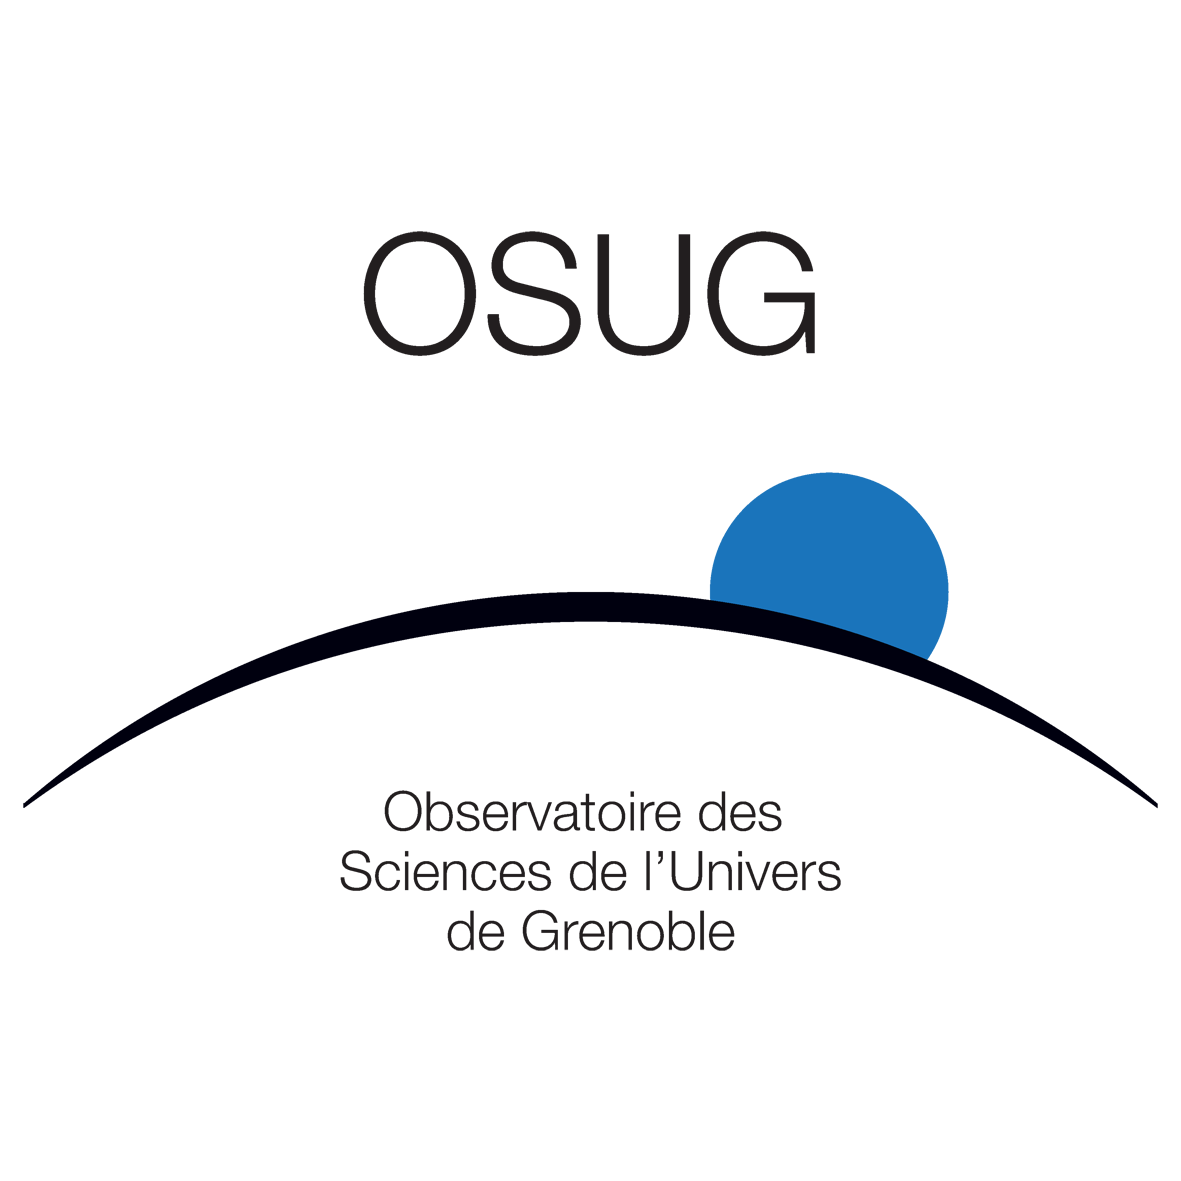 OSUG: Observatoire des Sciences de l'Univers de Grenoble